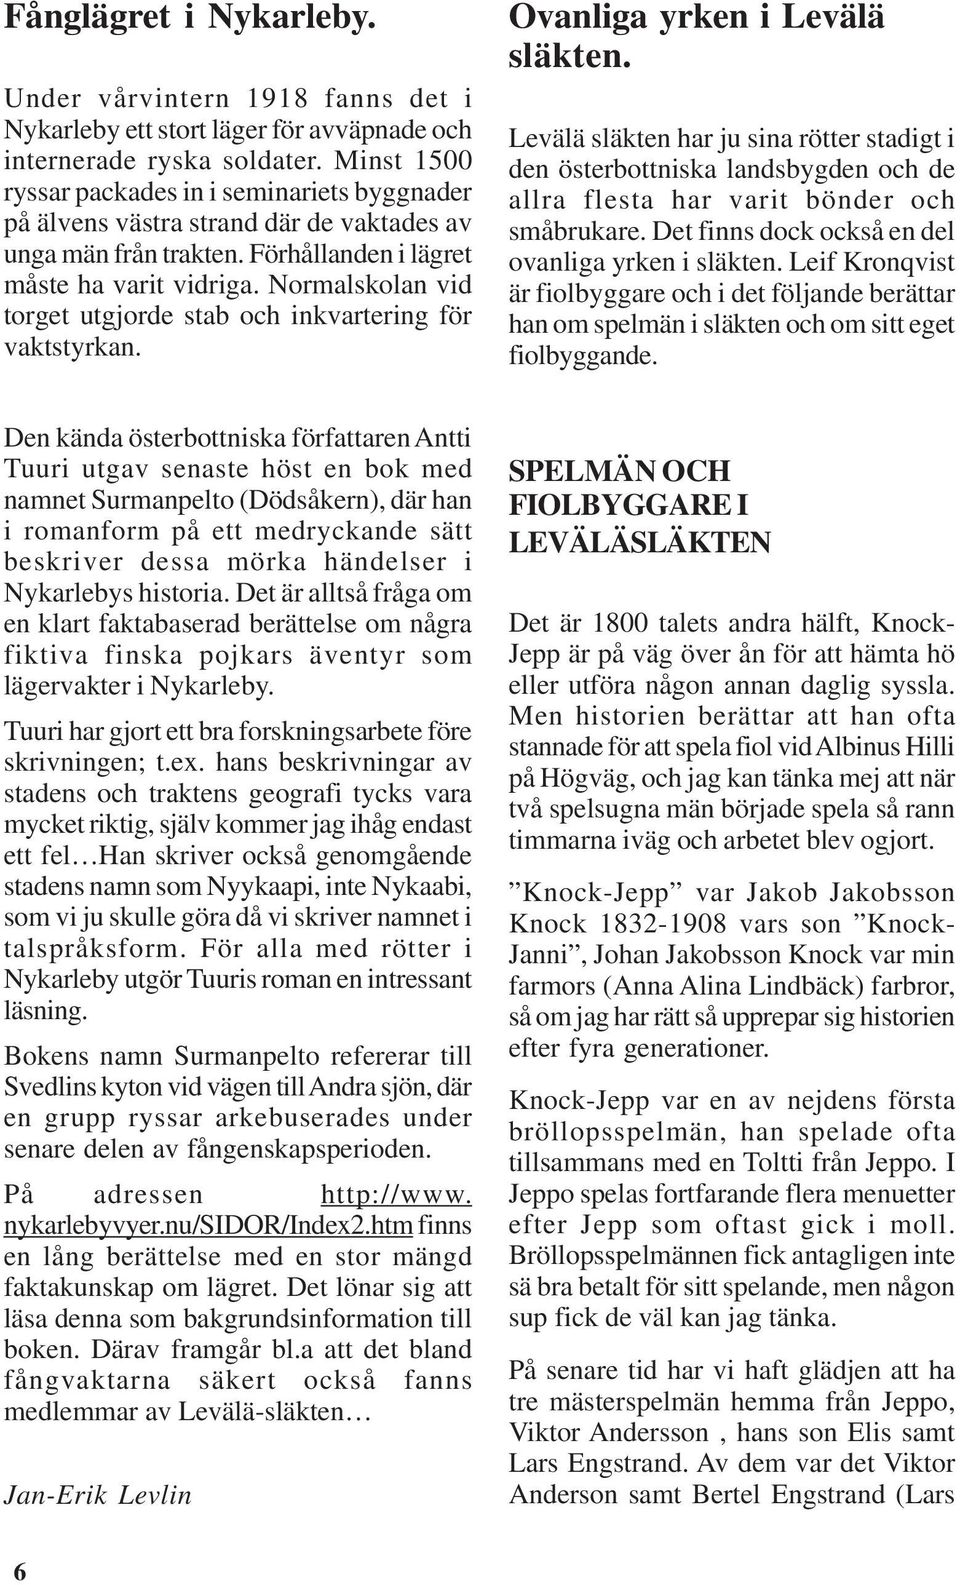 Normalskolan vid torget utgjorde stab och inkvartering för vaktstyrkan. Ovanliga yrken i Levälä släkten.